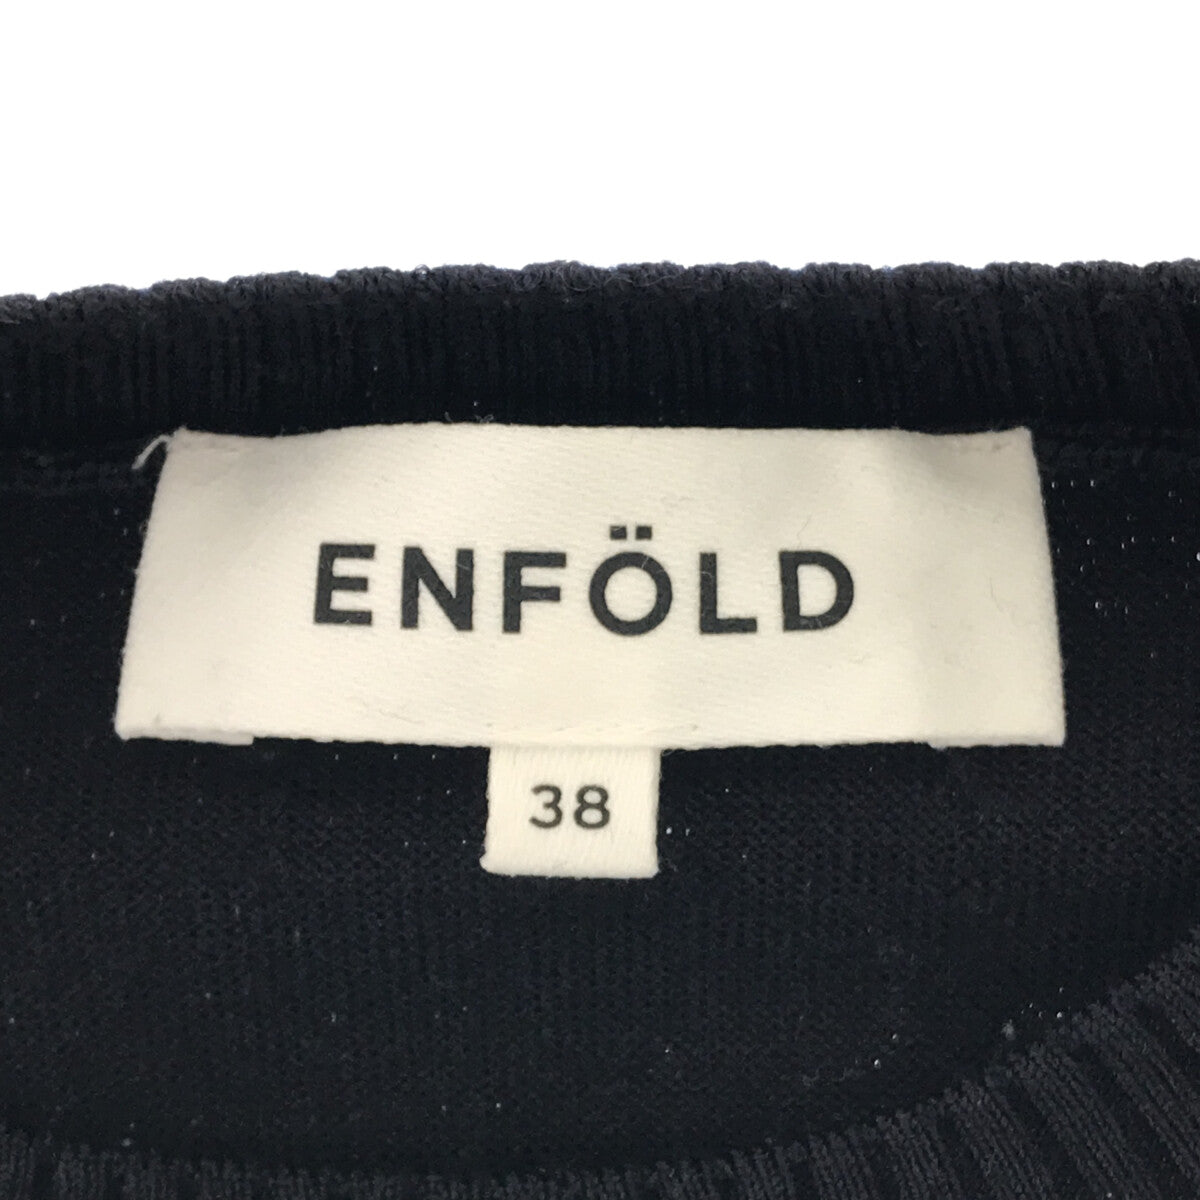 ENFOLD / エンフォルド | シャツドッキング レイヤード ニット | 38 